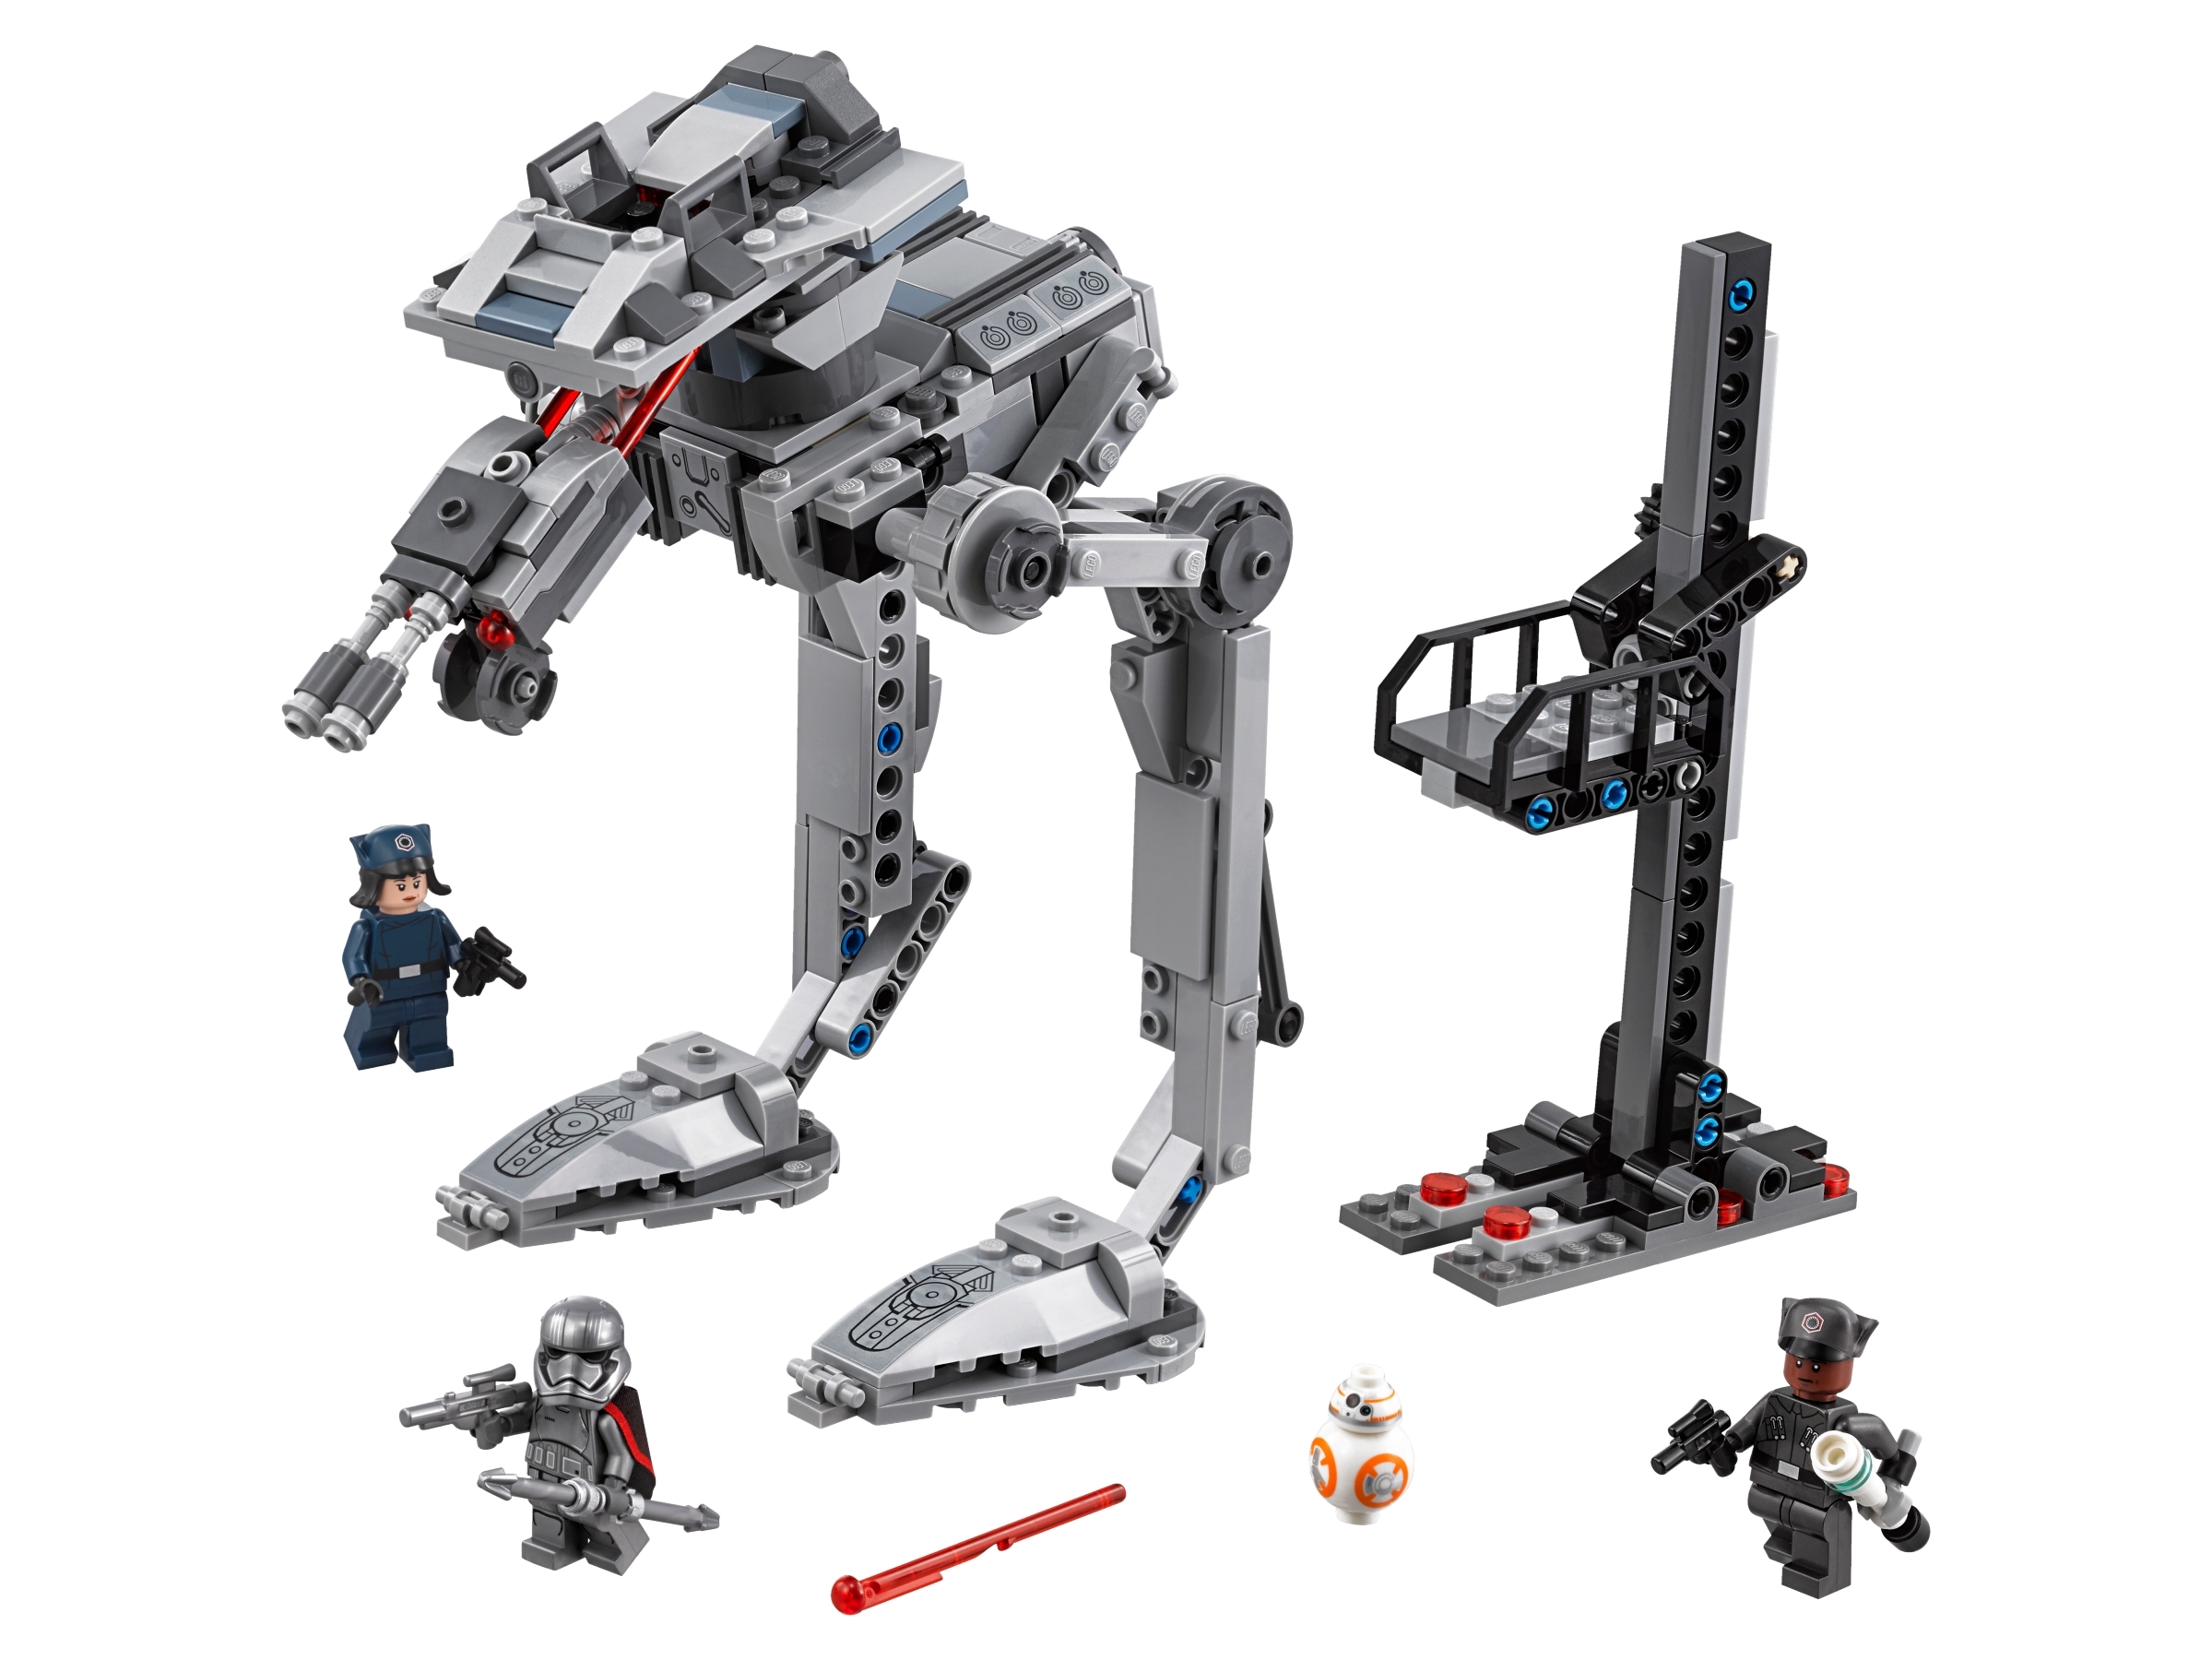 LEGO Star Wars The Last Jedi First Order AT-ST 75201 BNIB Brand New & Sealed 